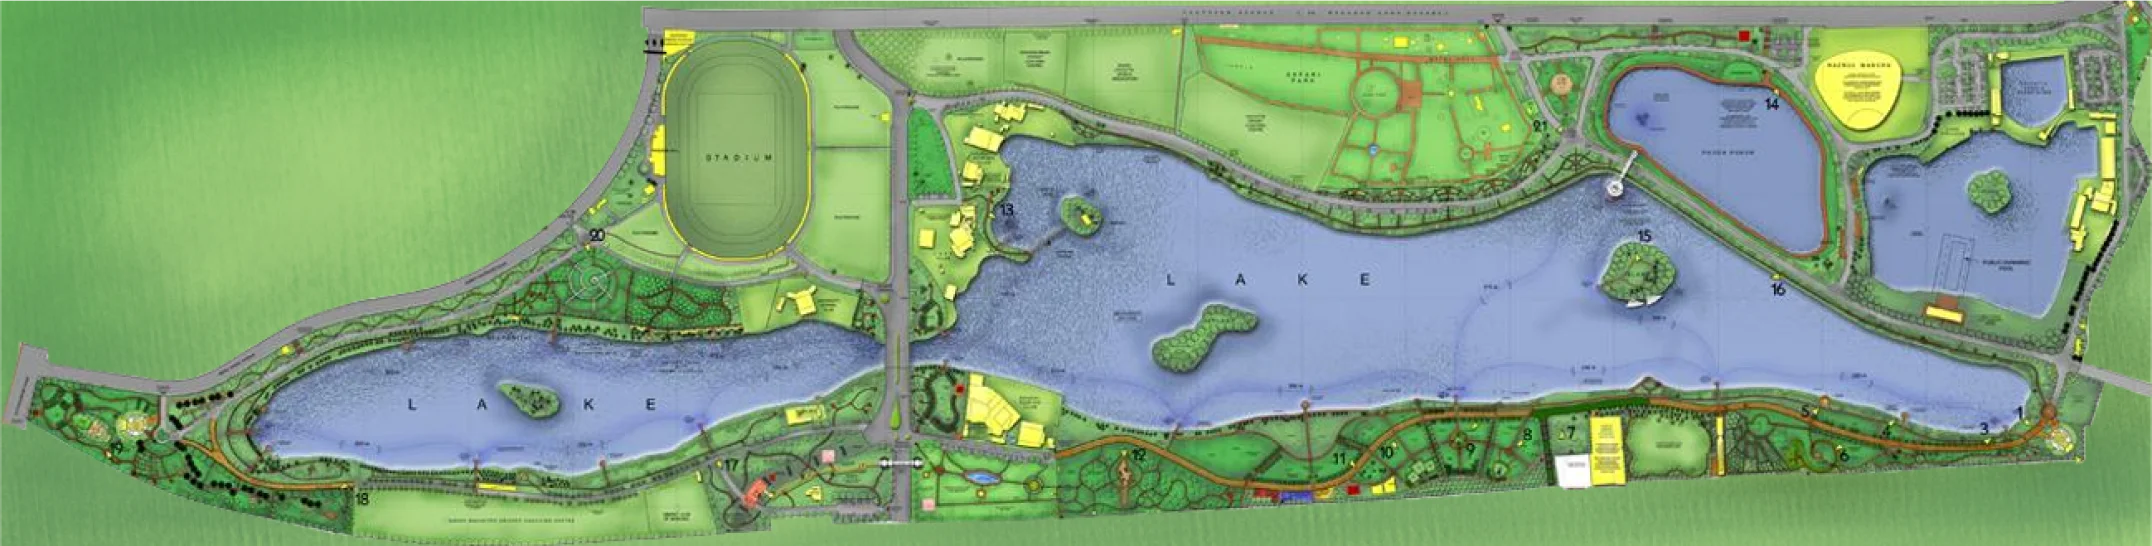 Proposed comprehensive landscape plan, 2007